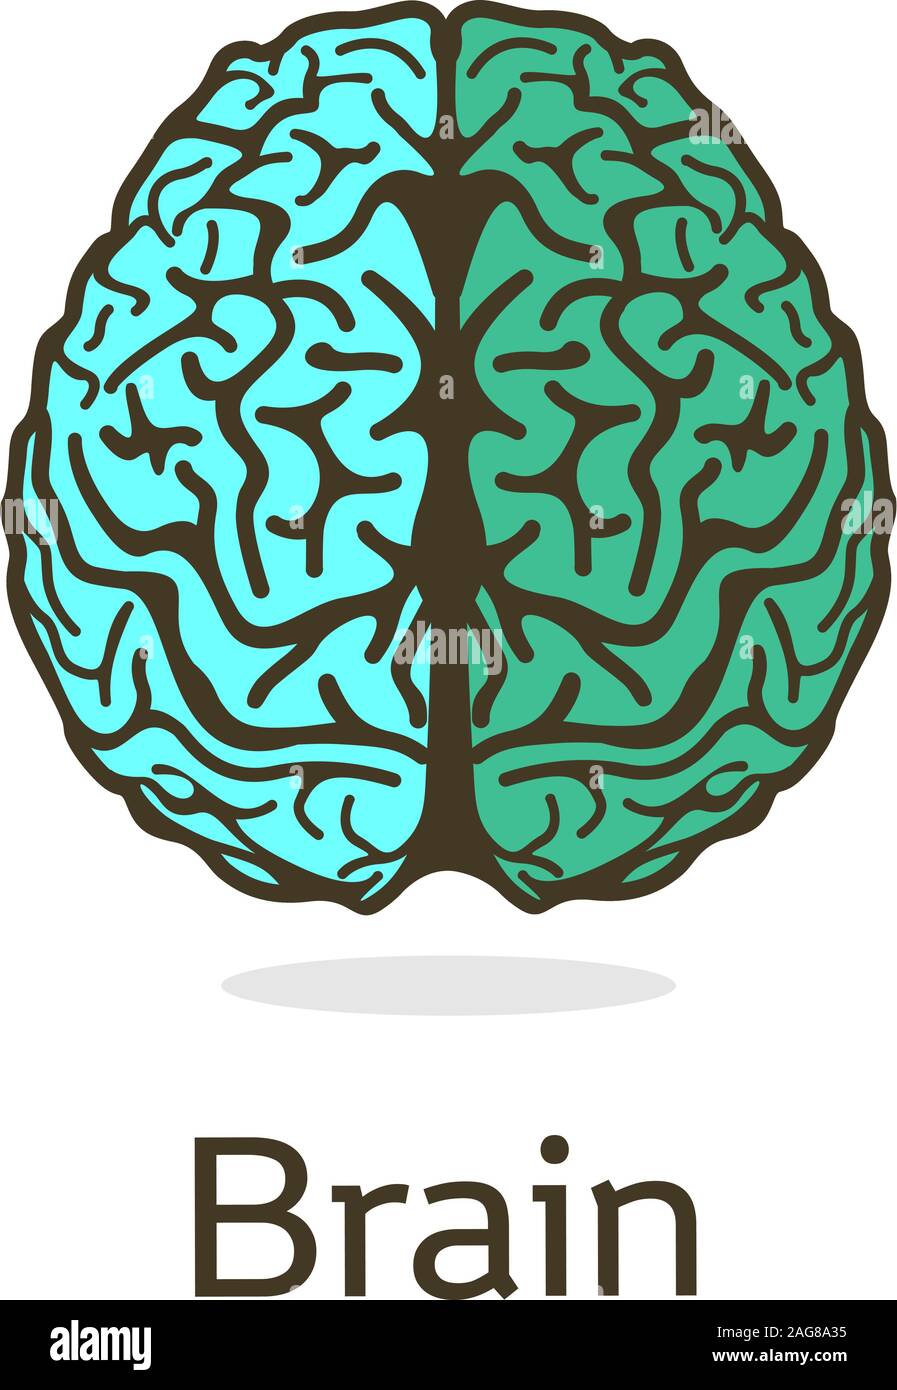 Ungewöhnliche Vektor-illustration, gyrus und Bereiche des menschlichen Gehirns. Der Geist und der Verstand der Menschheit. Isolierte turuoise Logo. Stock Vektor